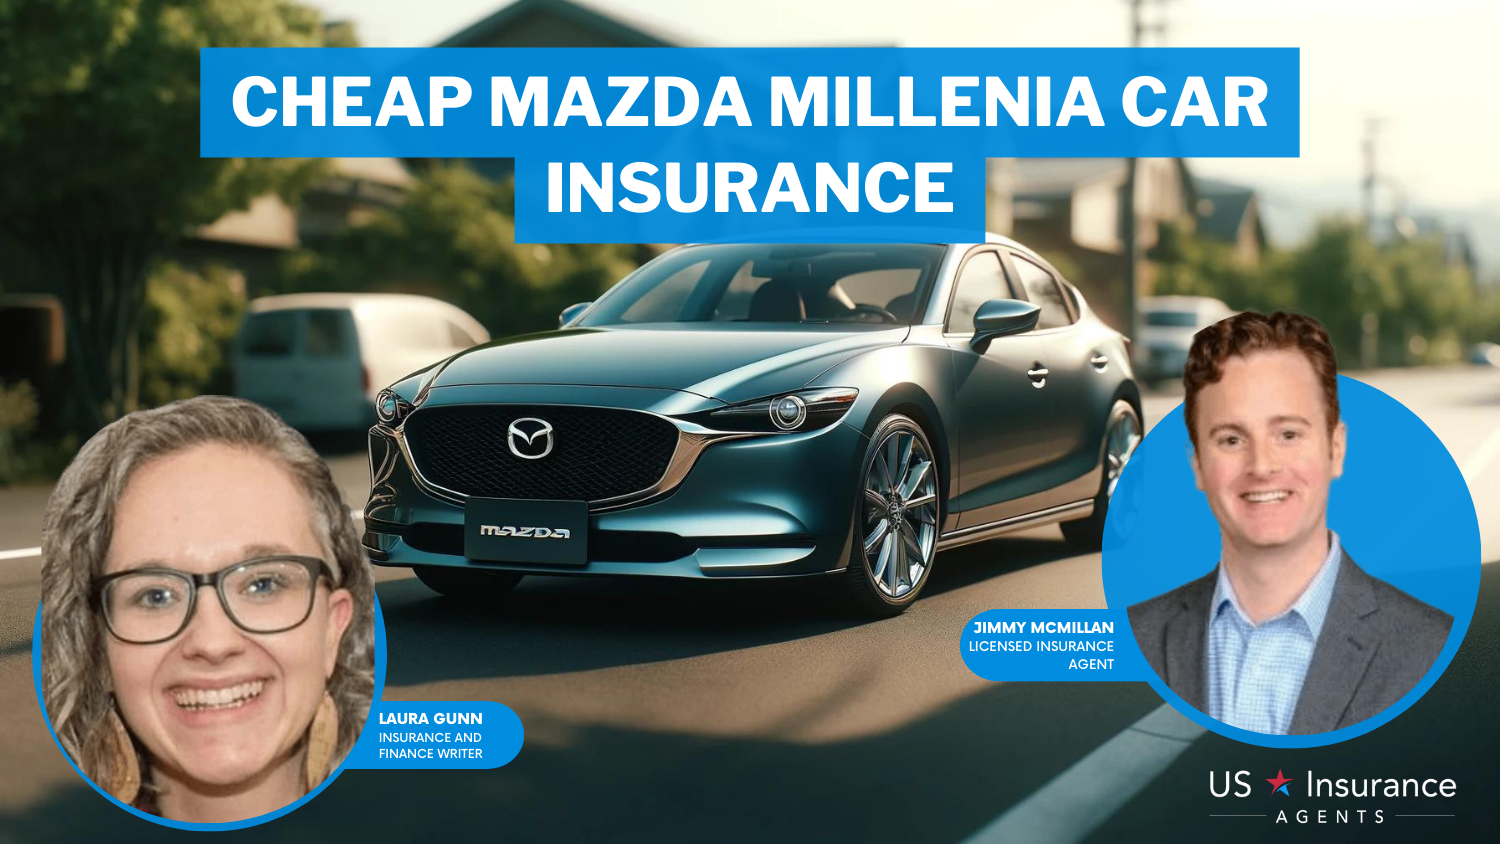 Cheap MAZDA Millenia Car Insurance: State Farm, USAA, and Progressive